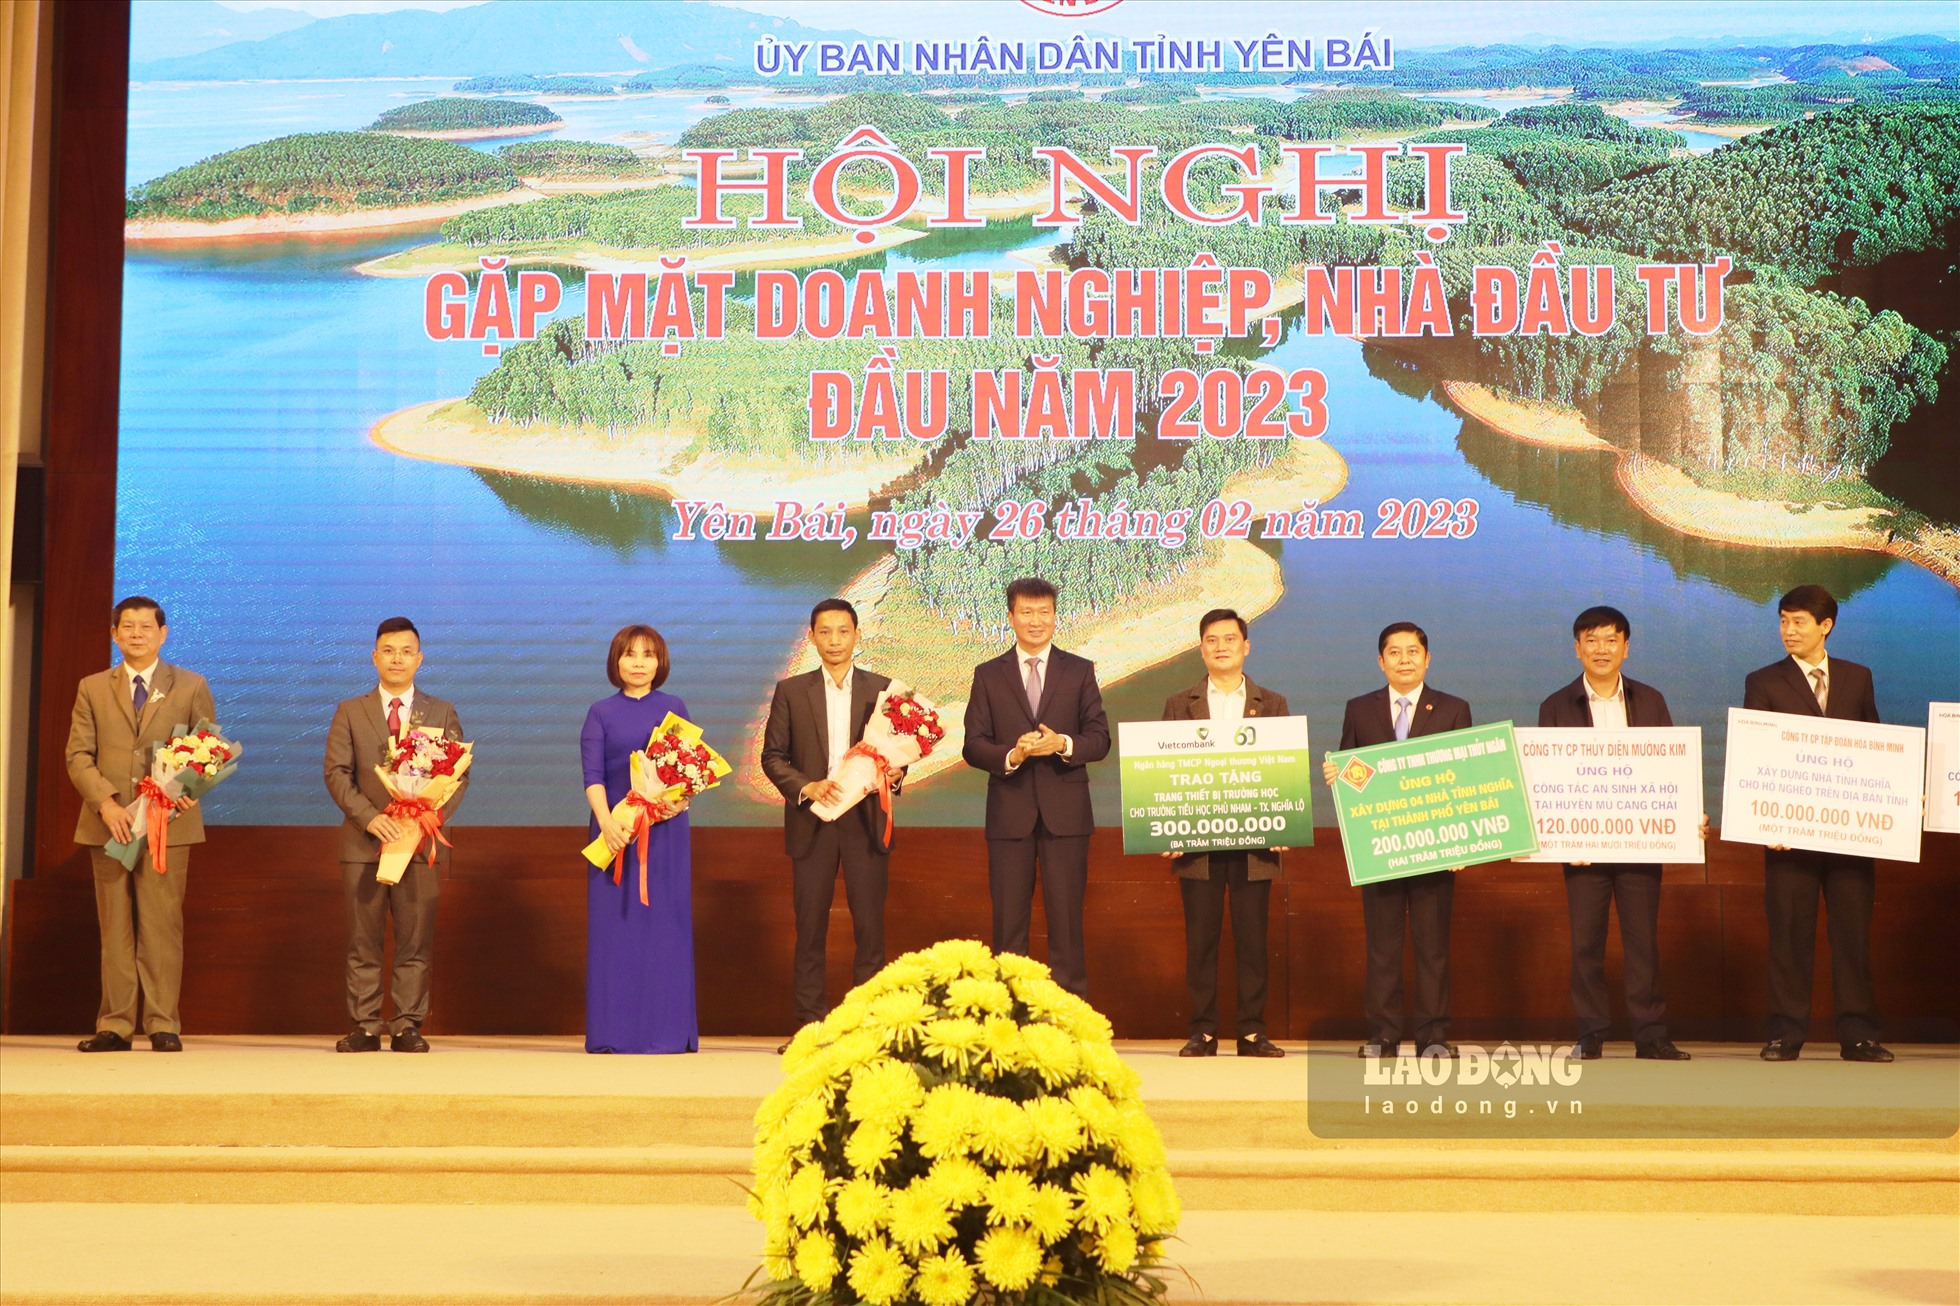 Chủ tịch UBND tỉnh Trần Huy Tuấn tặng hoa cảm ơn các doanh nghiệp đã tích cực tham gia các hoạt động vì cộng đồng, đóng góp vào công tác an sinh xã hội ở địa phương.